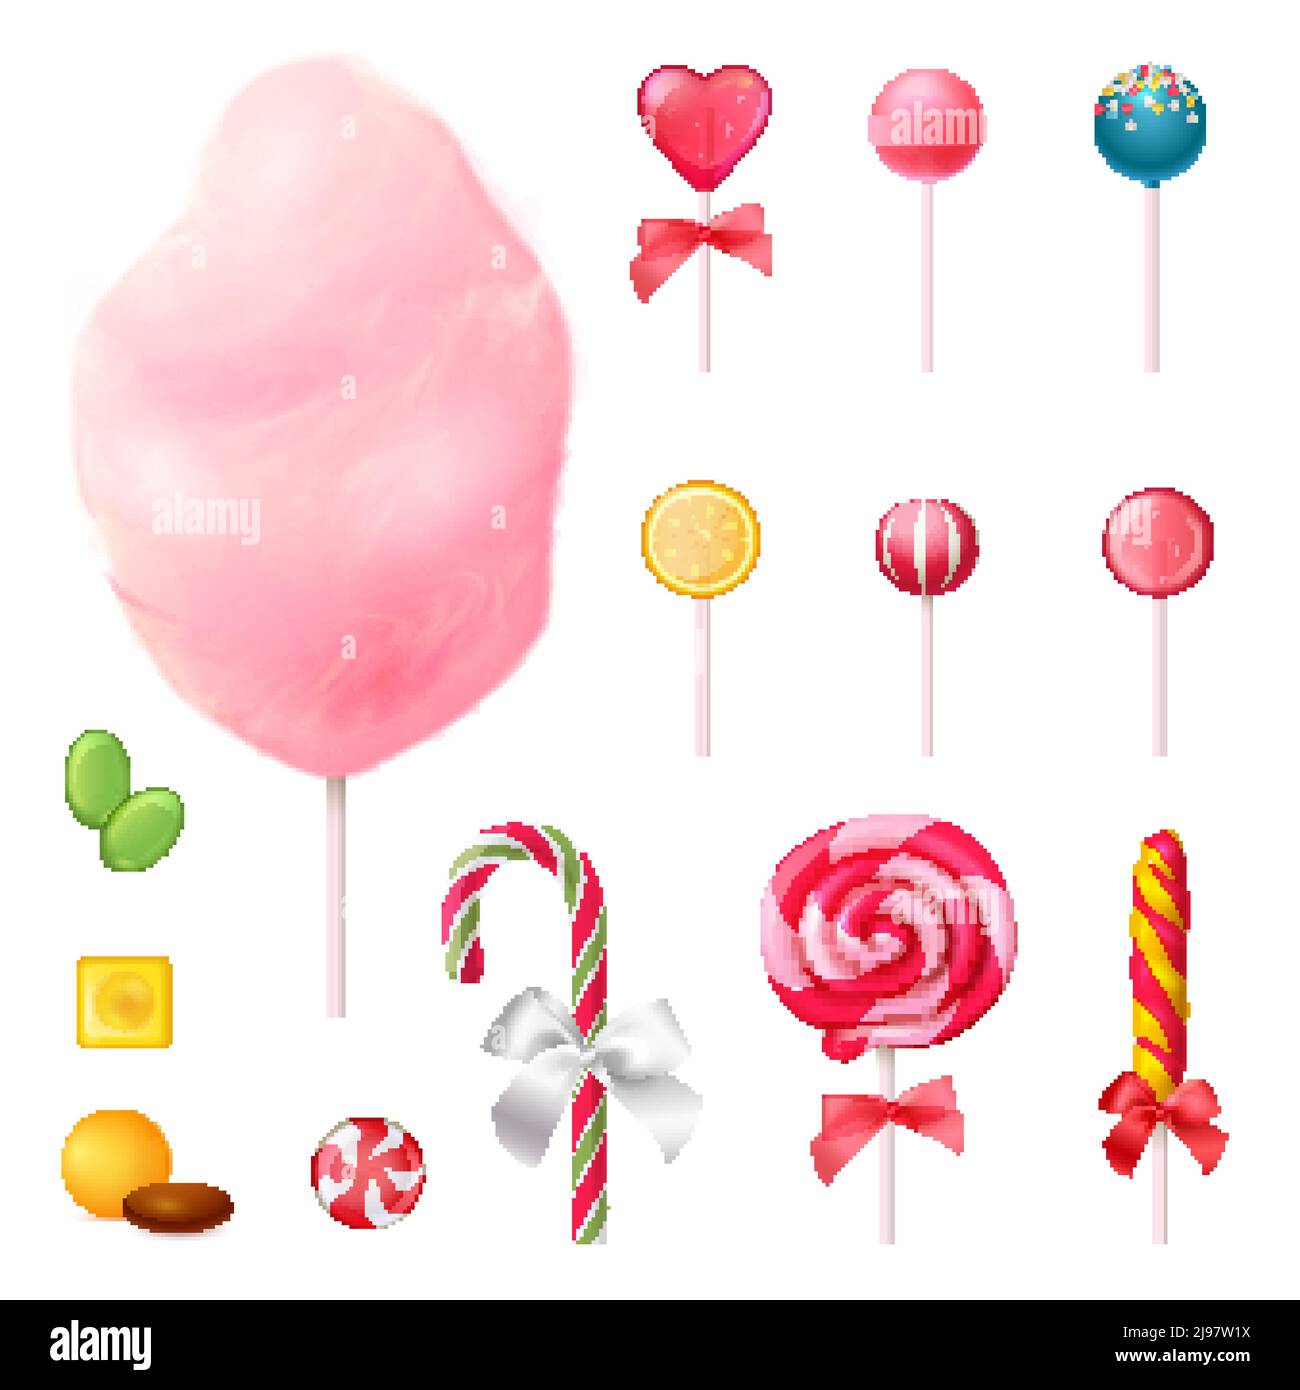 Süßigkeiten Set von realistischen Icons mit dekorierten Lutscher, Zuckerwatte auf Stick, bunte Karamellen isoliert Vektor-Illustration Stock Vektor